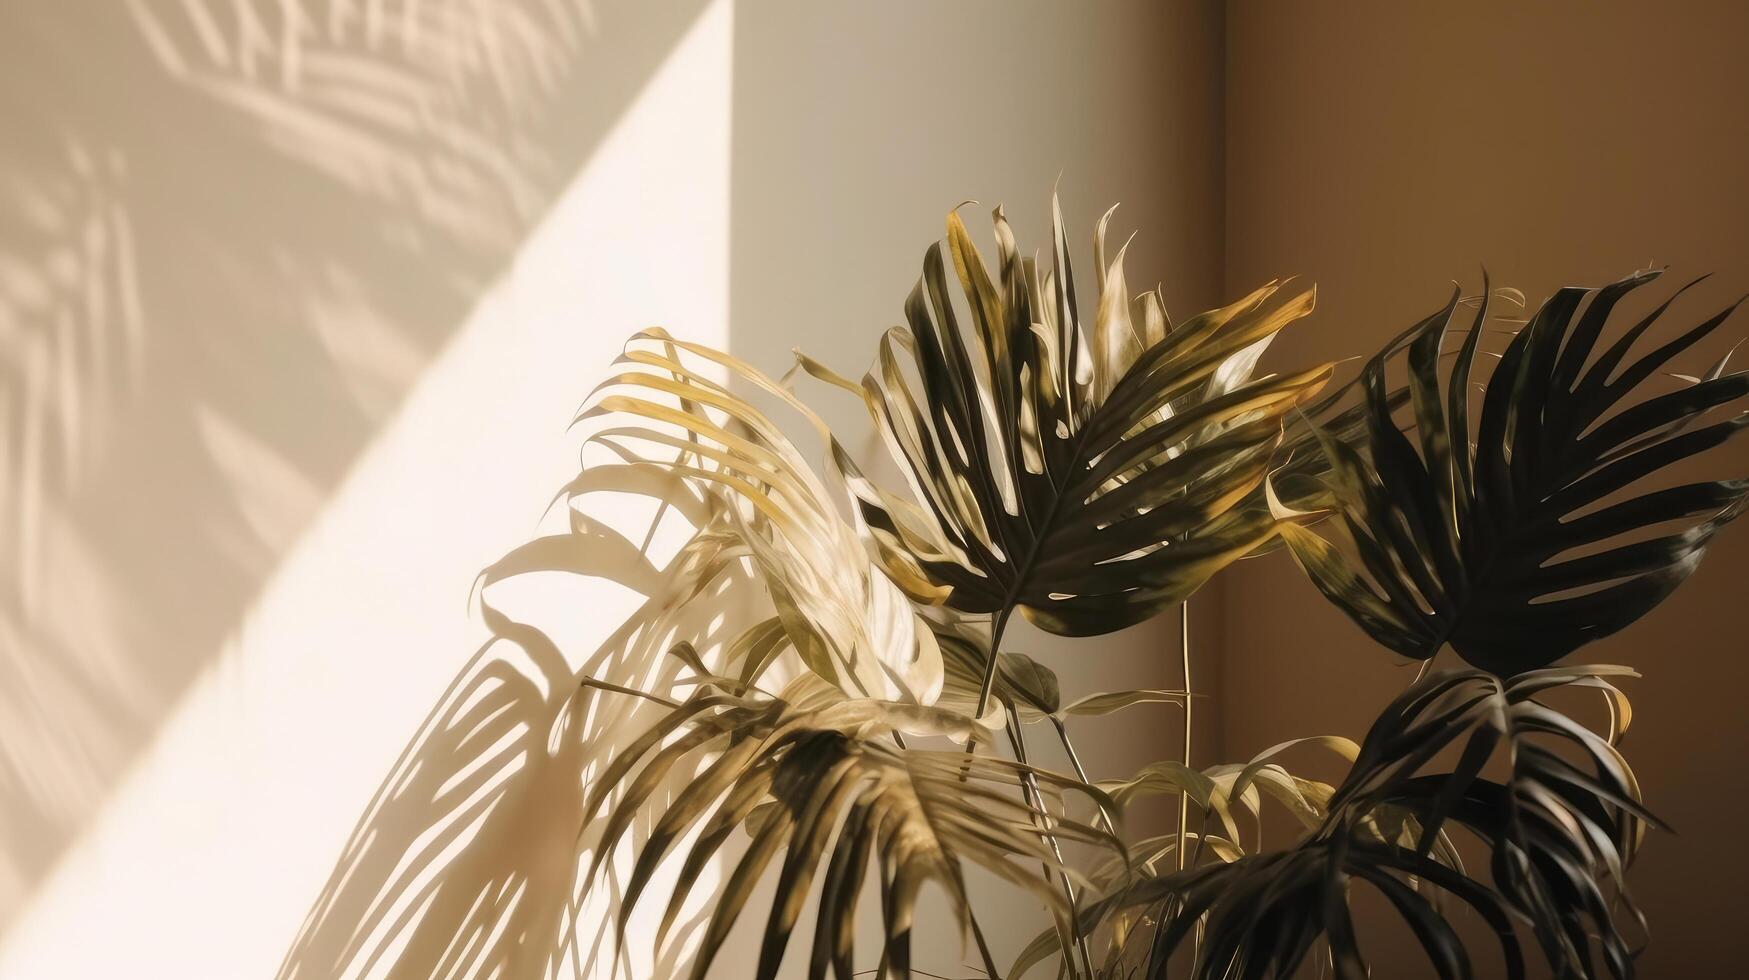 palma hojas antecedentes con sombra. ilustración ai generativo foto